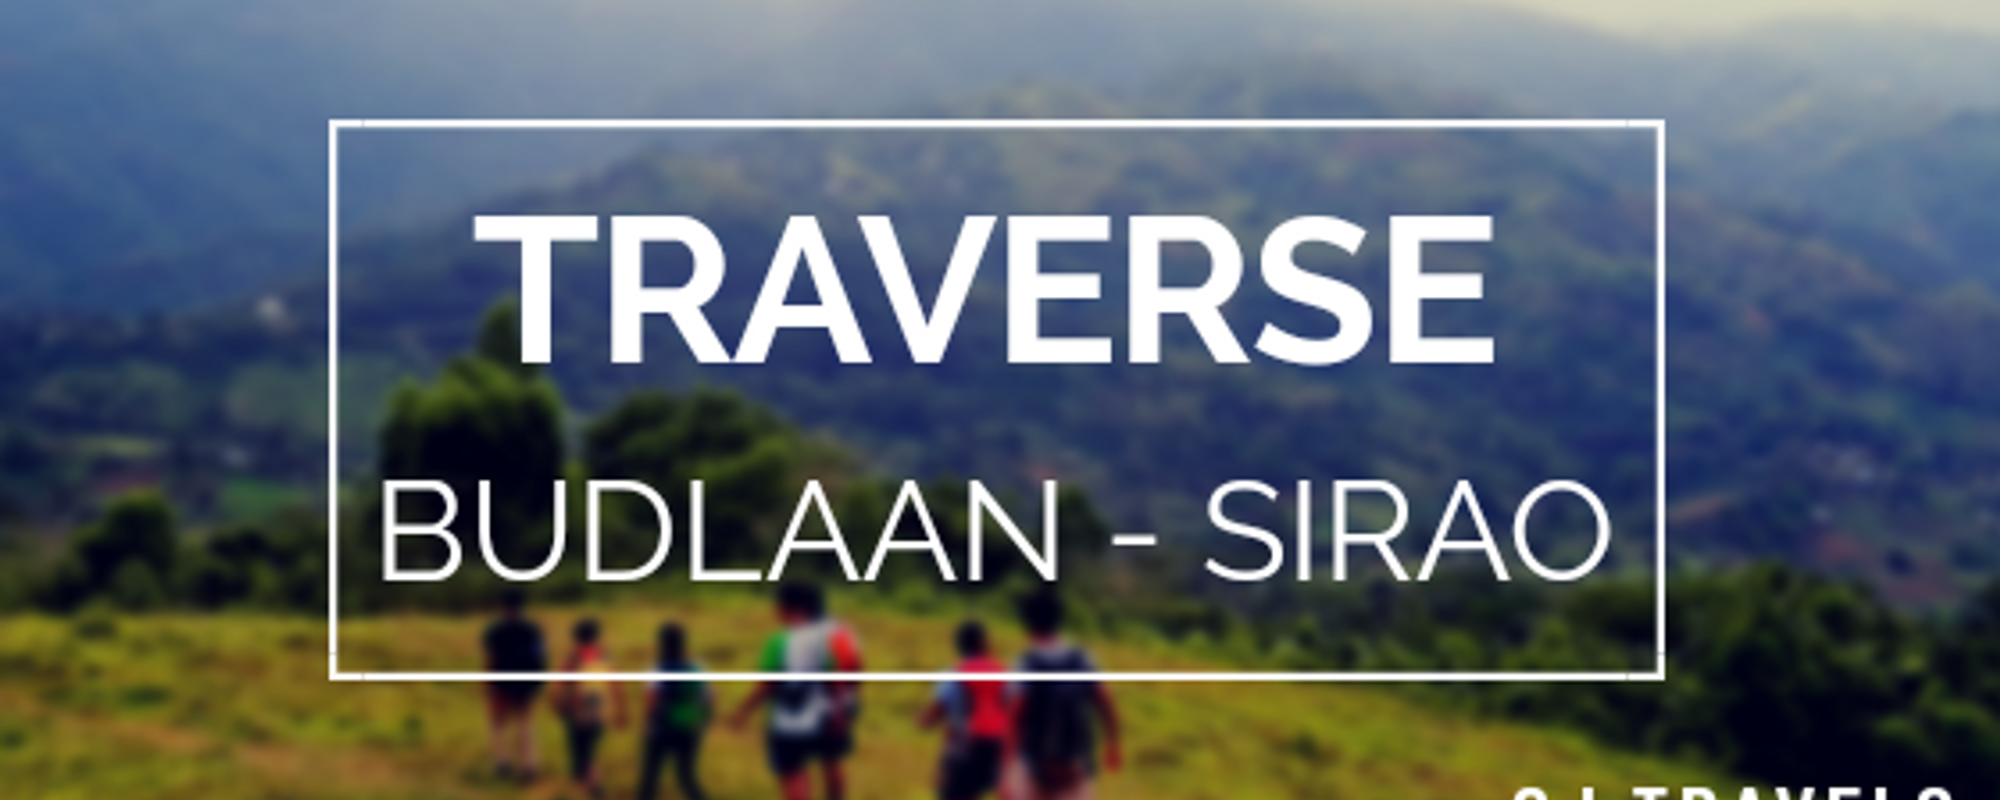 Traverse: Budlaan - Sirao | Trekking Wilderness | CJ Travels